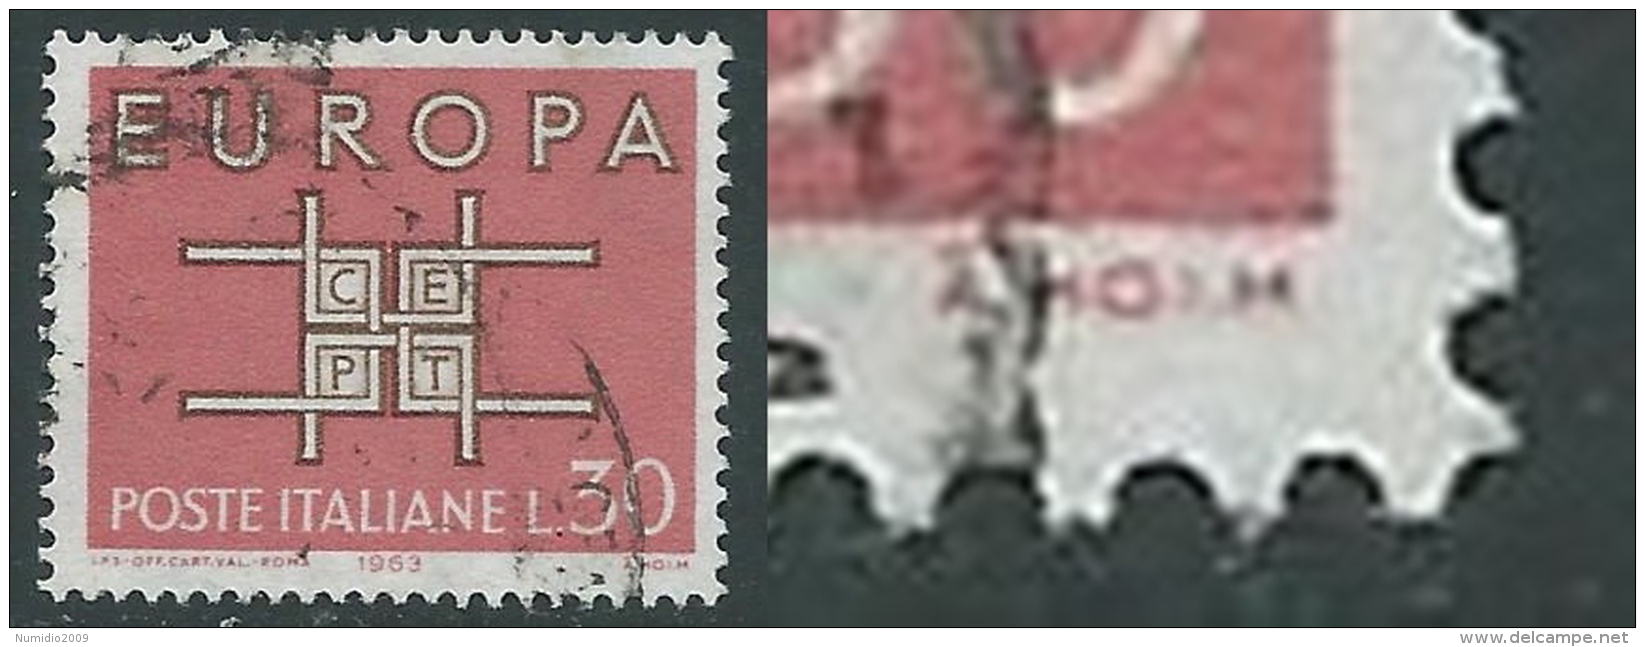 1963 ITALIA USATO EUROPA VARIETà RIPORTO I INVECE DI L NEL NOME HOLM - B2-2 - Varietà E Curiosità